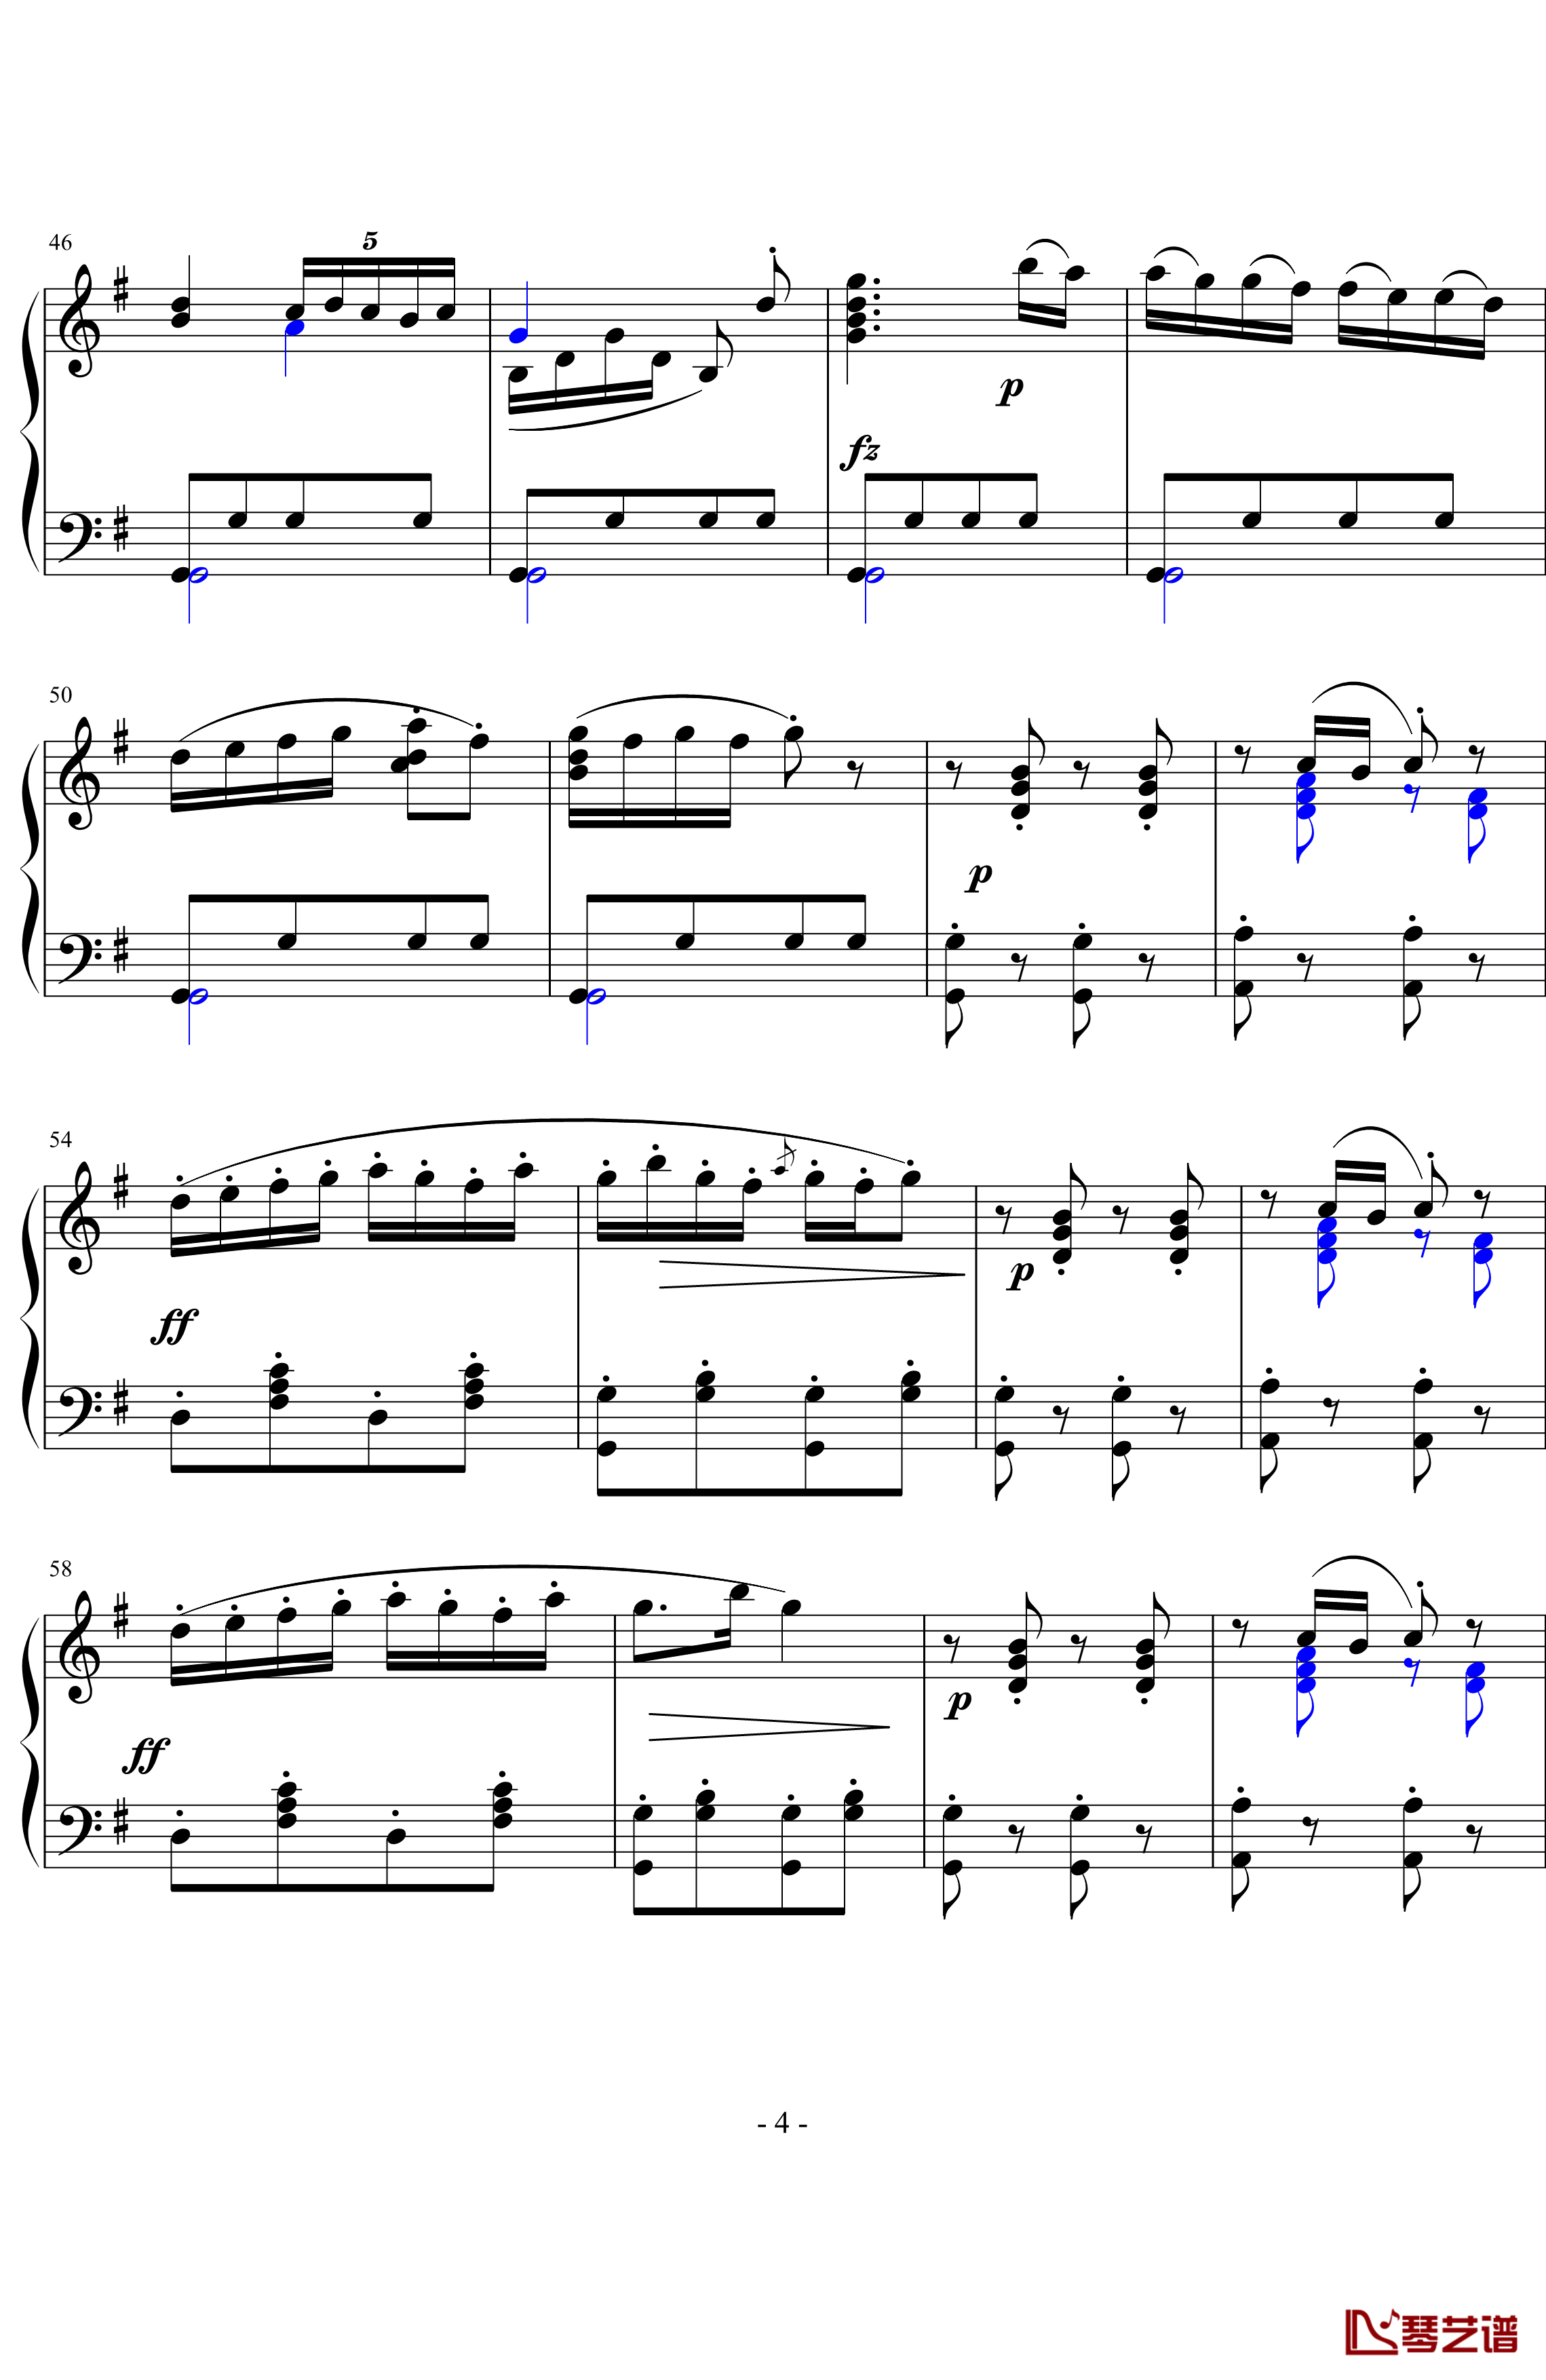 吉普赛回旋曲钢琴谱-海顿4